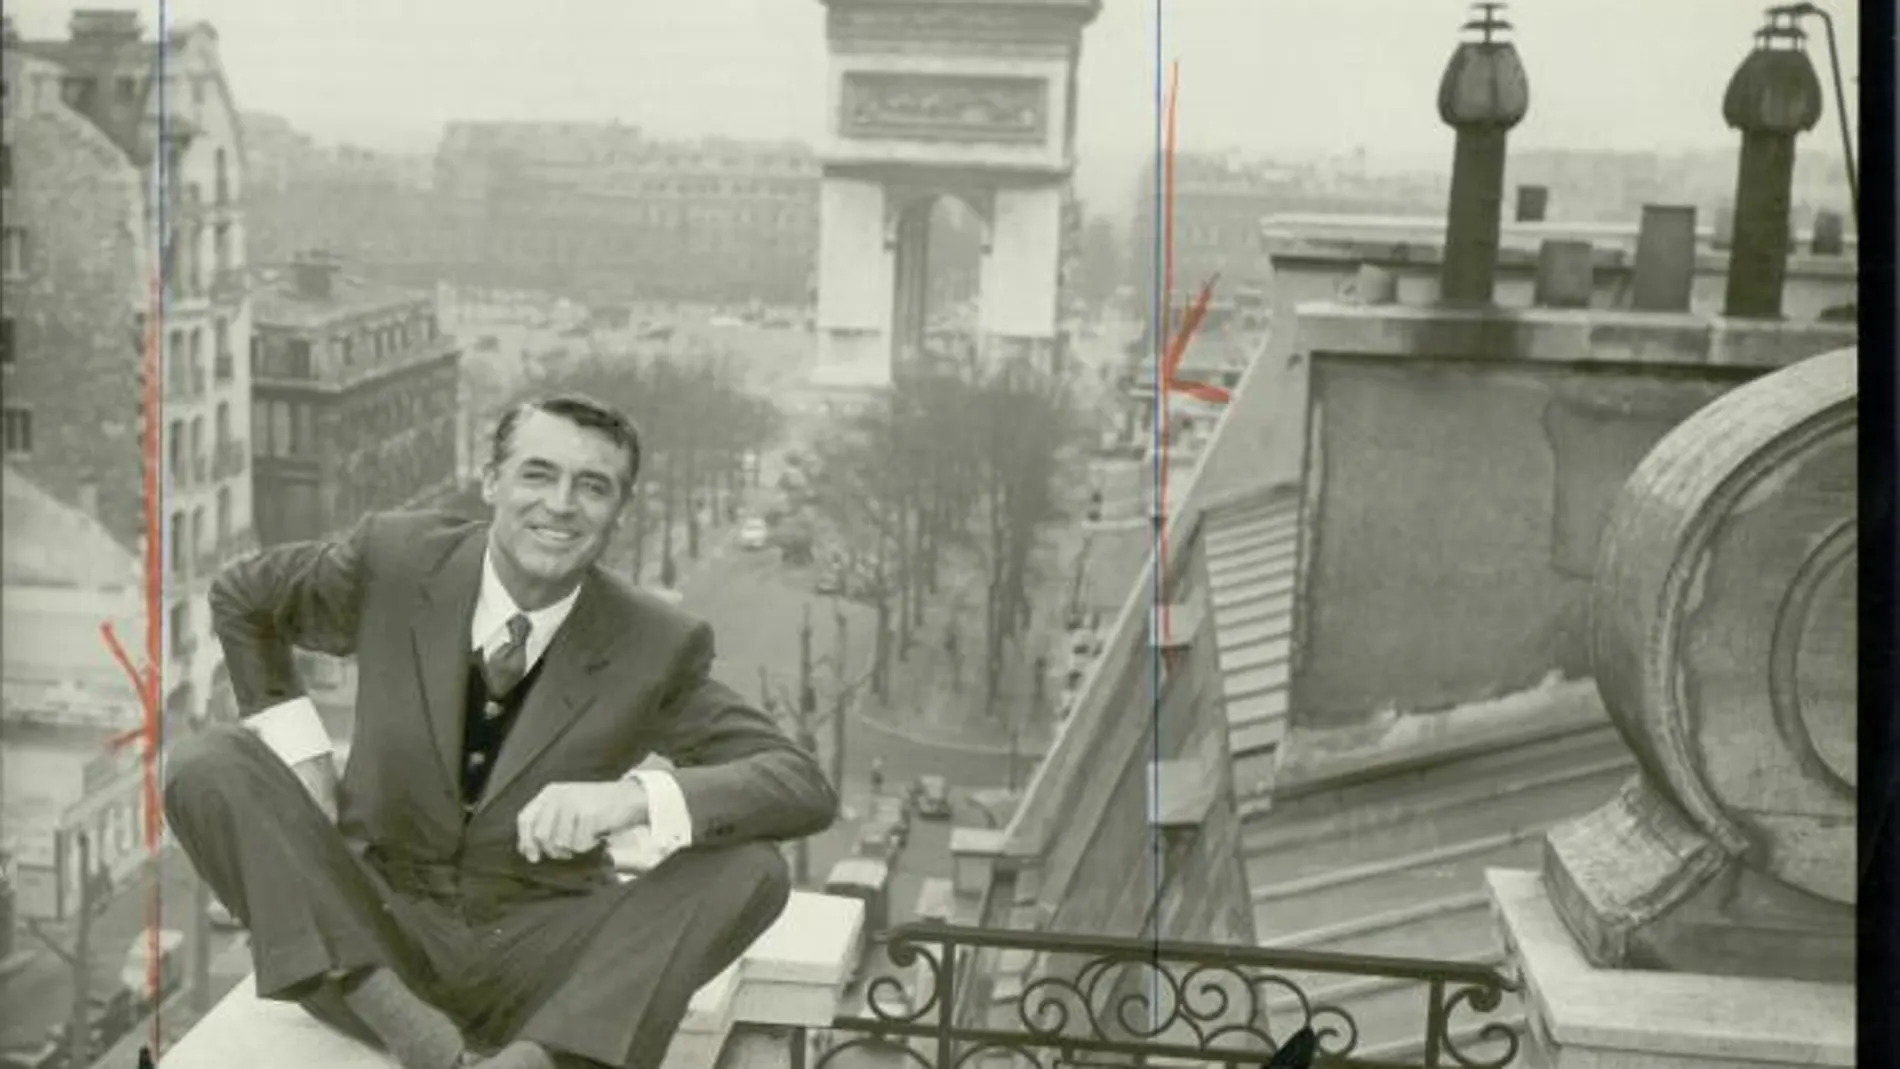 Cary Grant en una foto frente al Arco del triunfo parisino